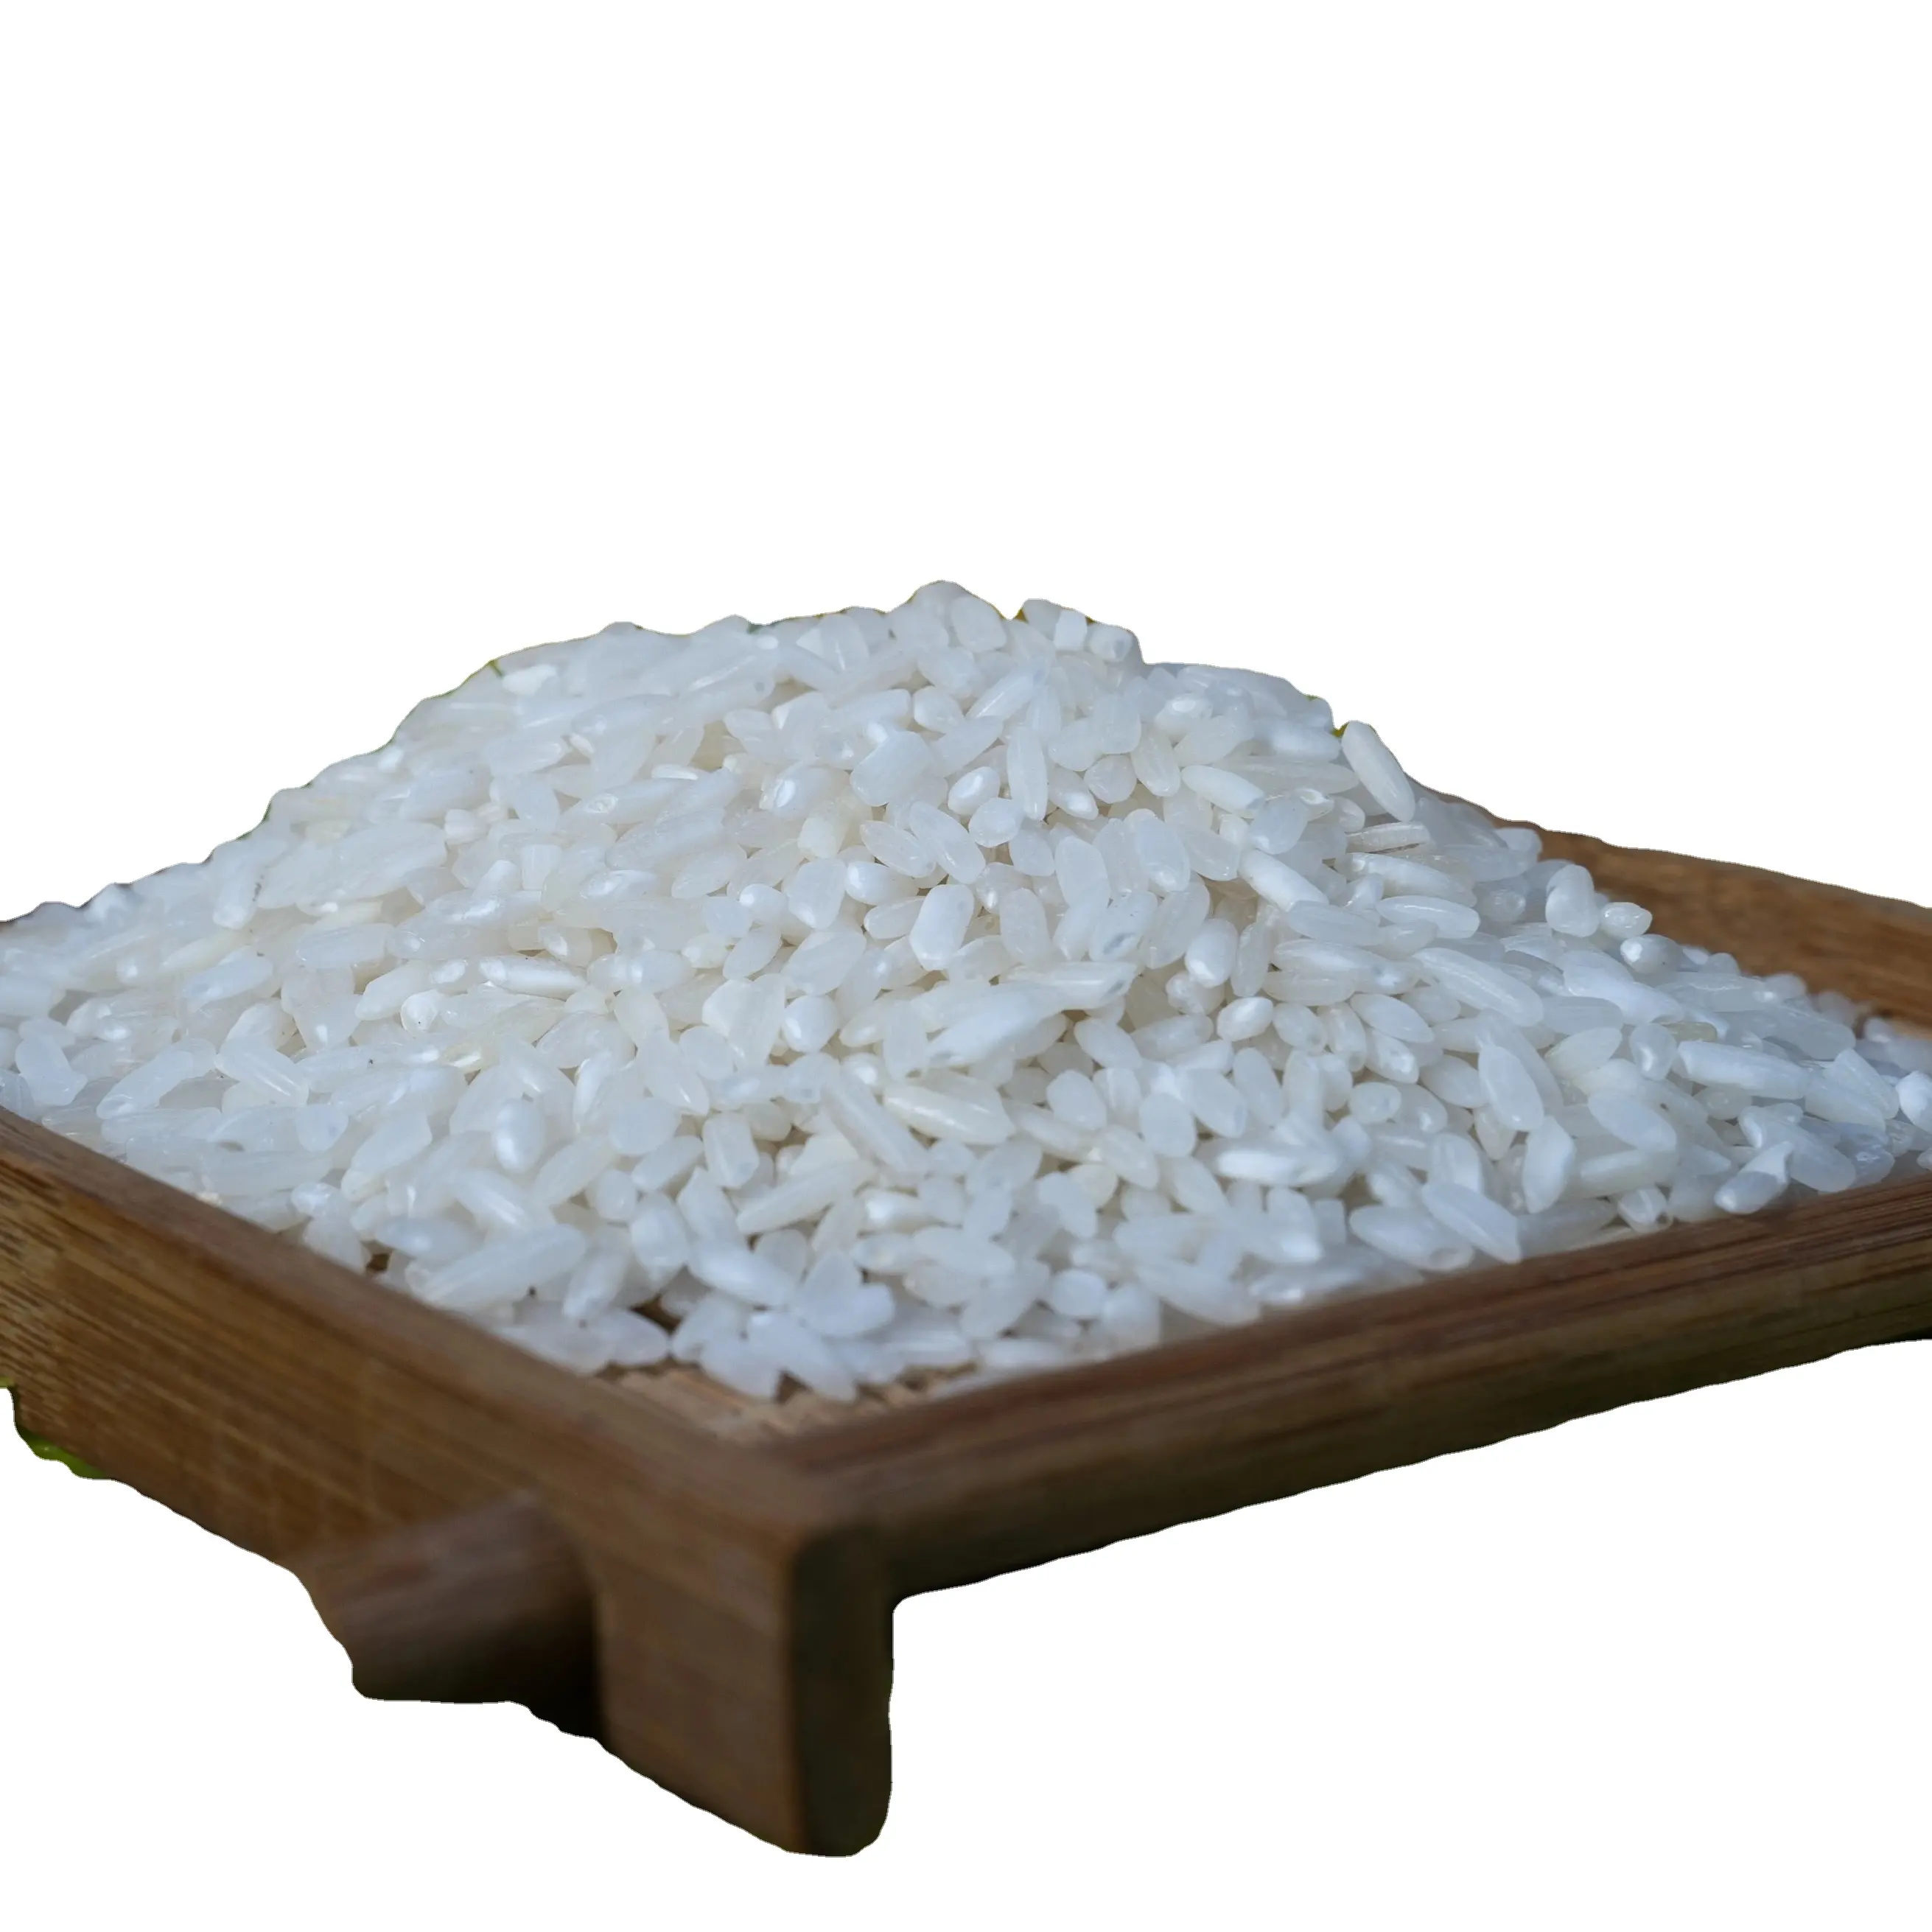 Premium Vietnamese Langkorrelige Witte Rijst-5% Gebroken: Nieuw Gewas, Harde Textuur, Bestseller Met 24 Maanden Houdbaarheid, Vietnamese Rijst